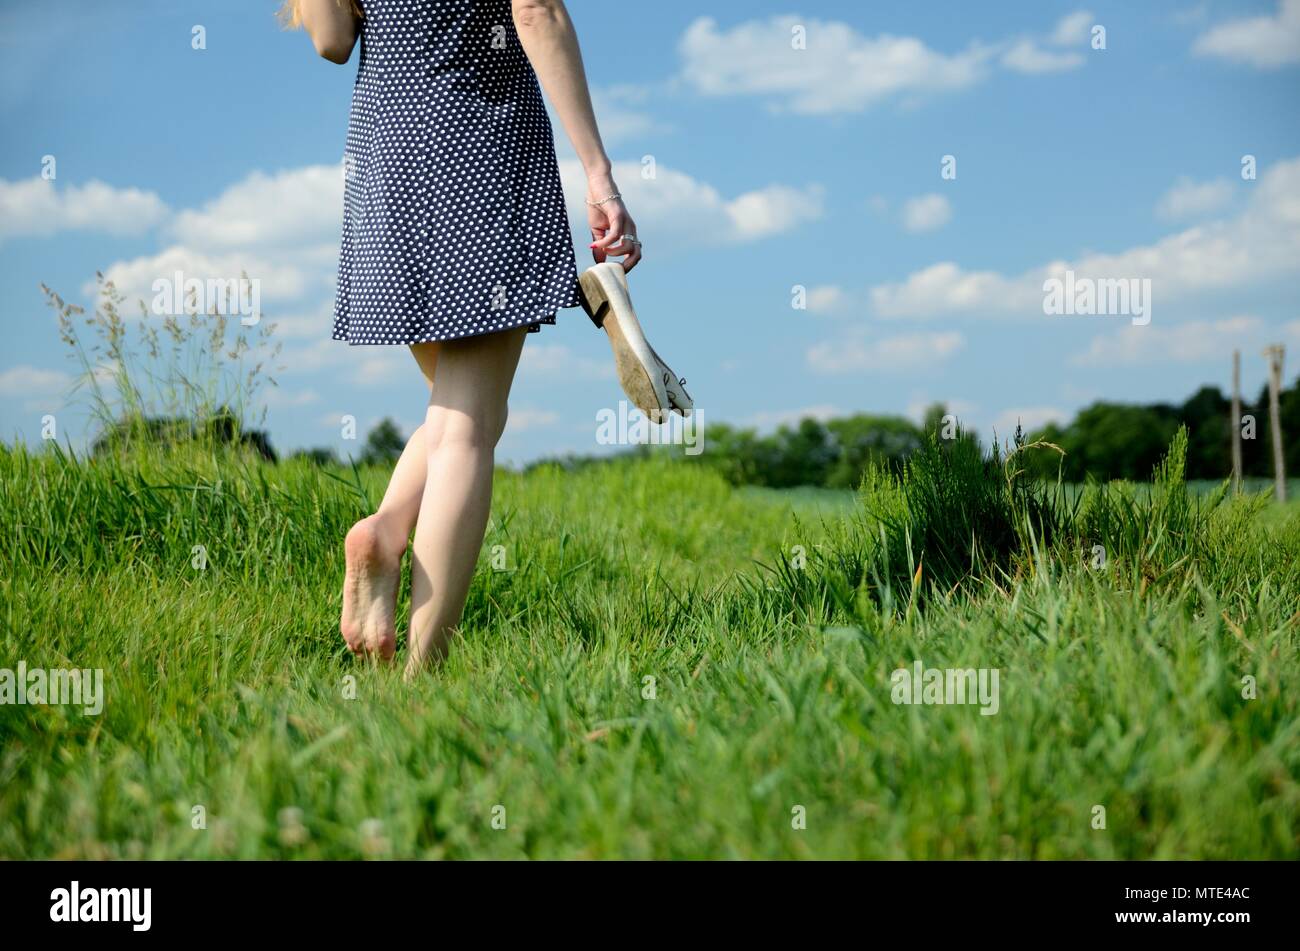 Una niña de 10 años con un vestido azul sentada en un campo de hierba y  flores, piernas largas y desnudas, descalza